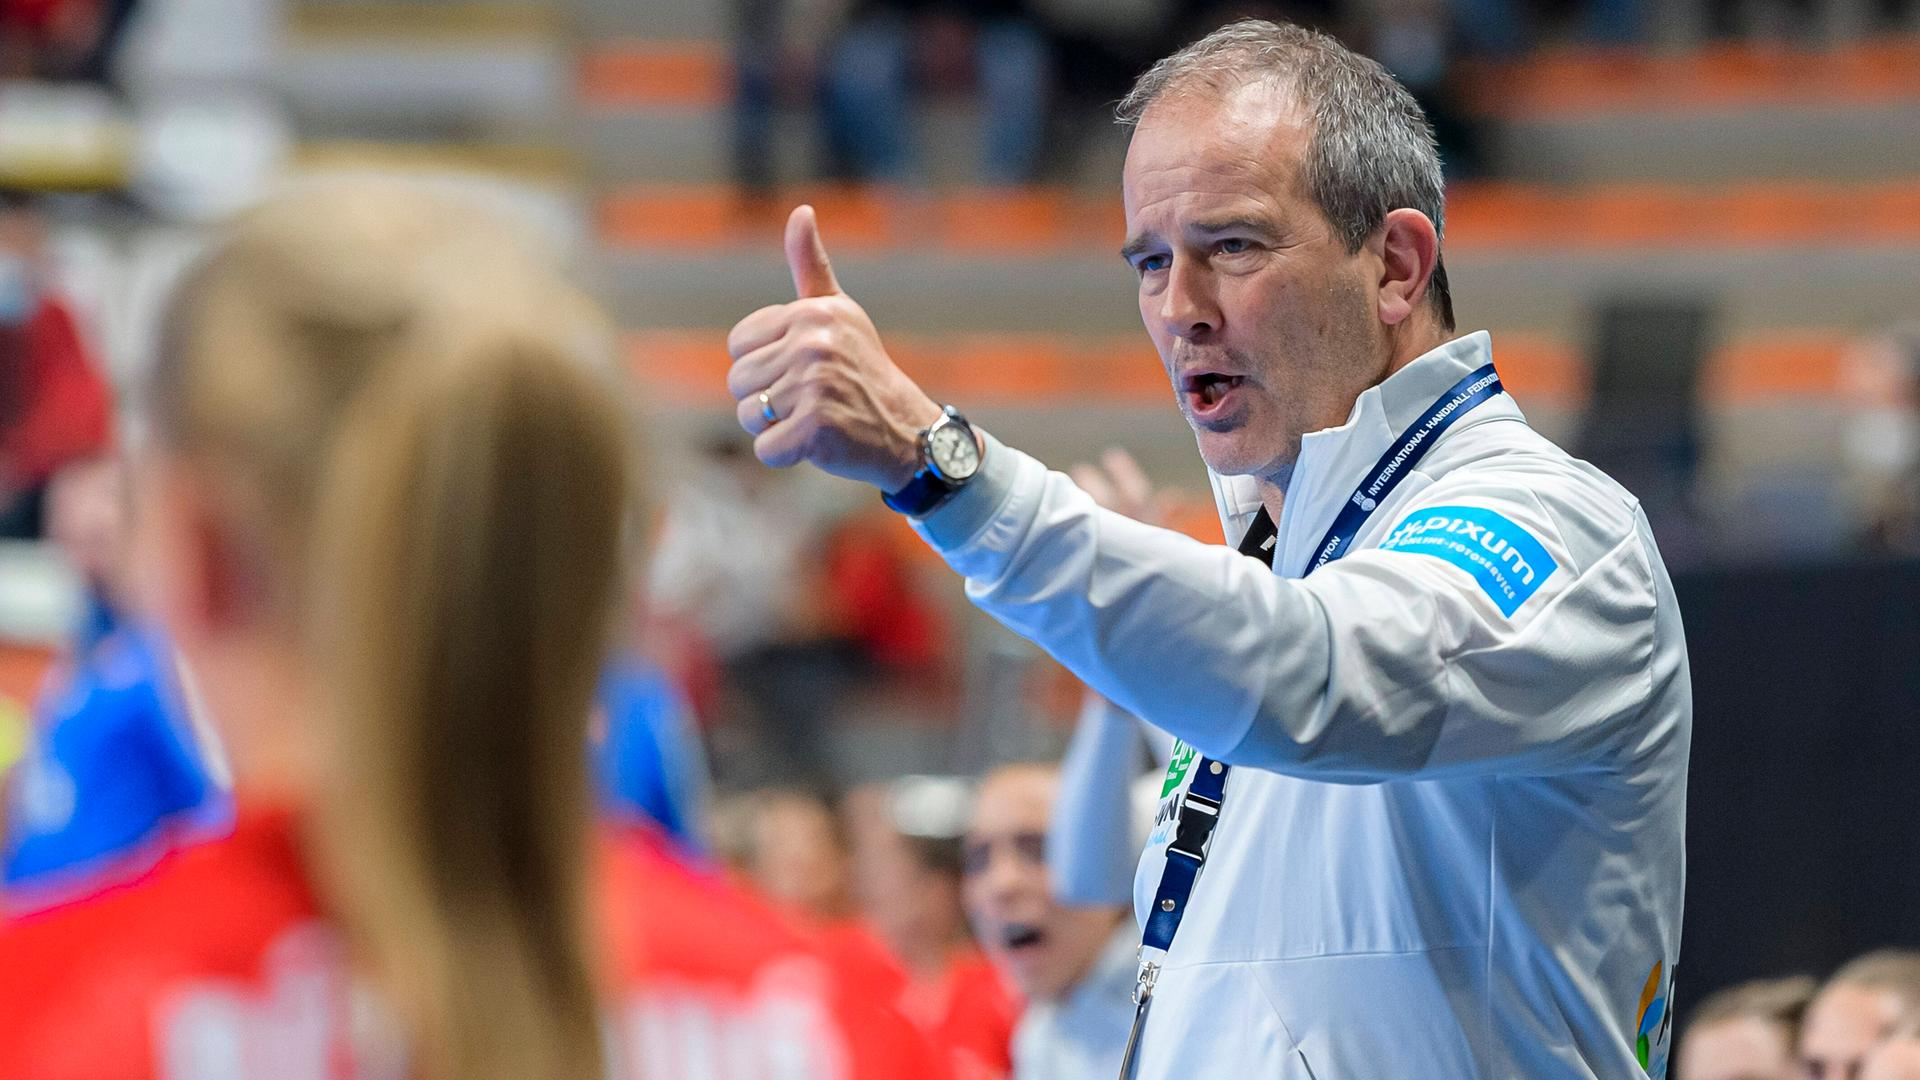 Handball, Frauen: WM, Slowakei - Deutschland, Vorrunde, Gruppe E, 1. Spieltag Trainer Henk Groener (Deutschland) Gestik